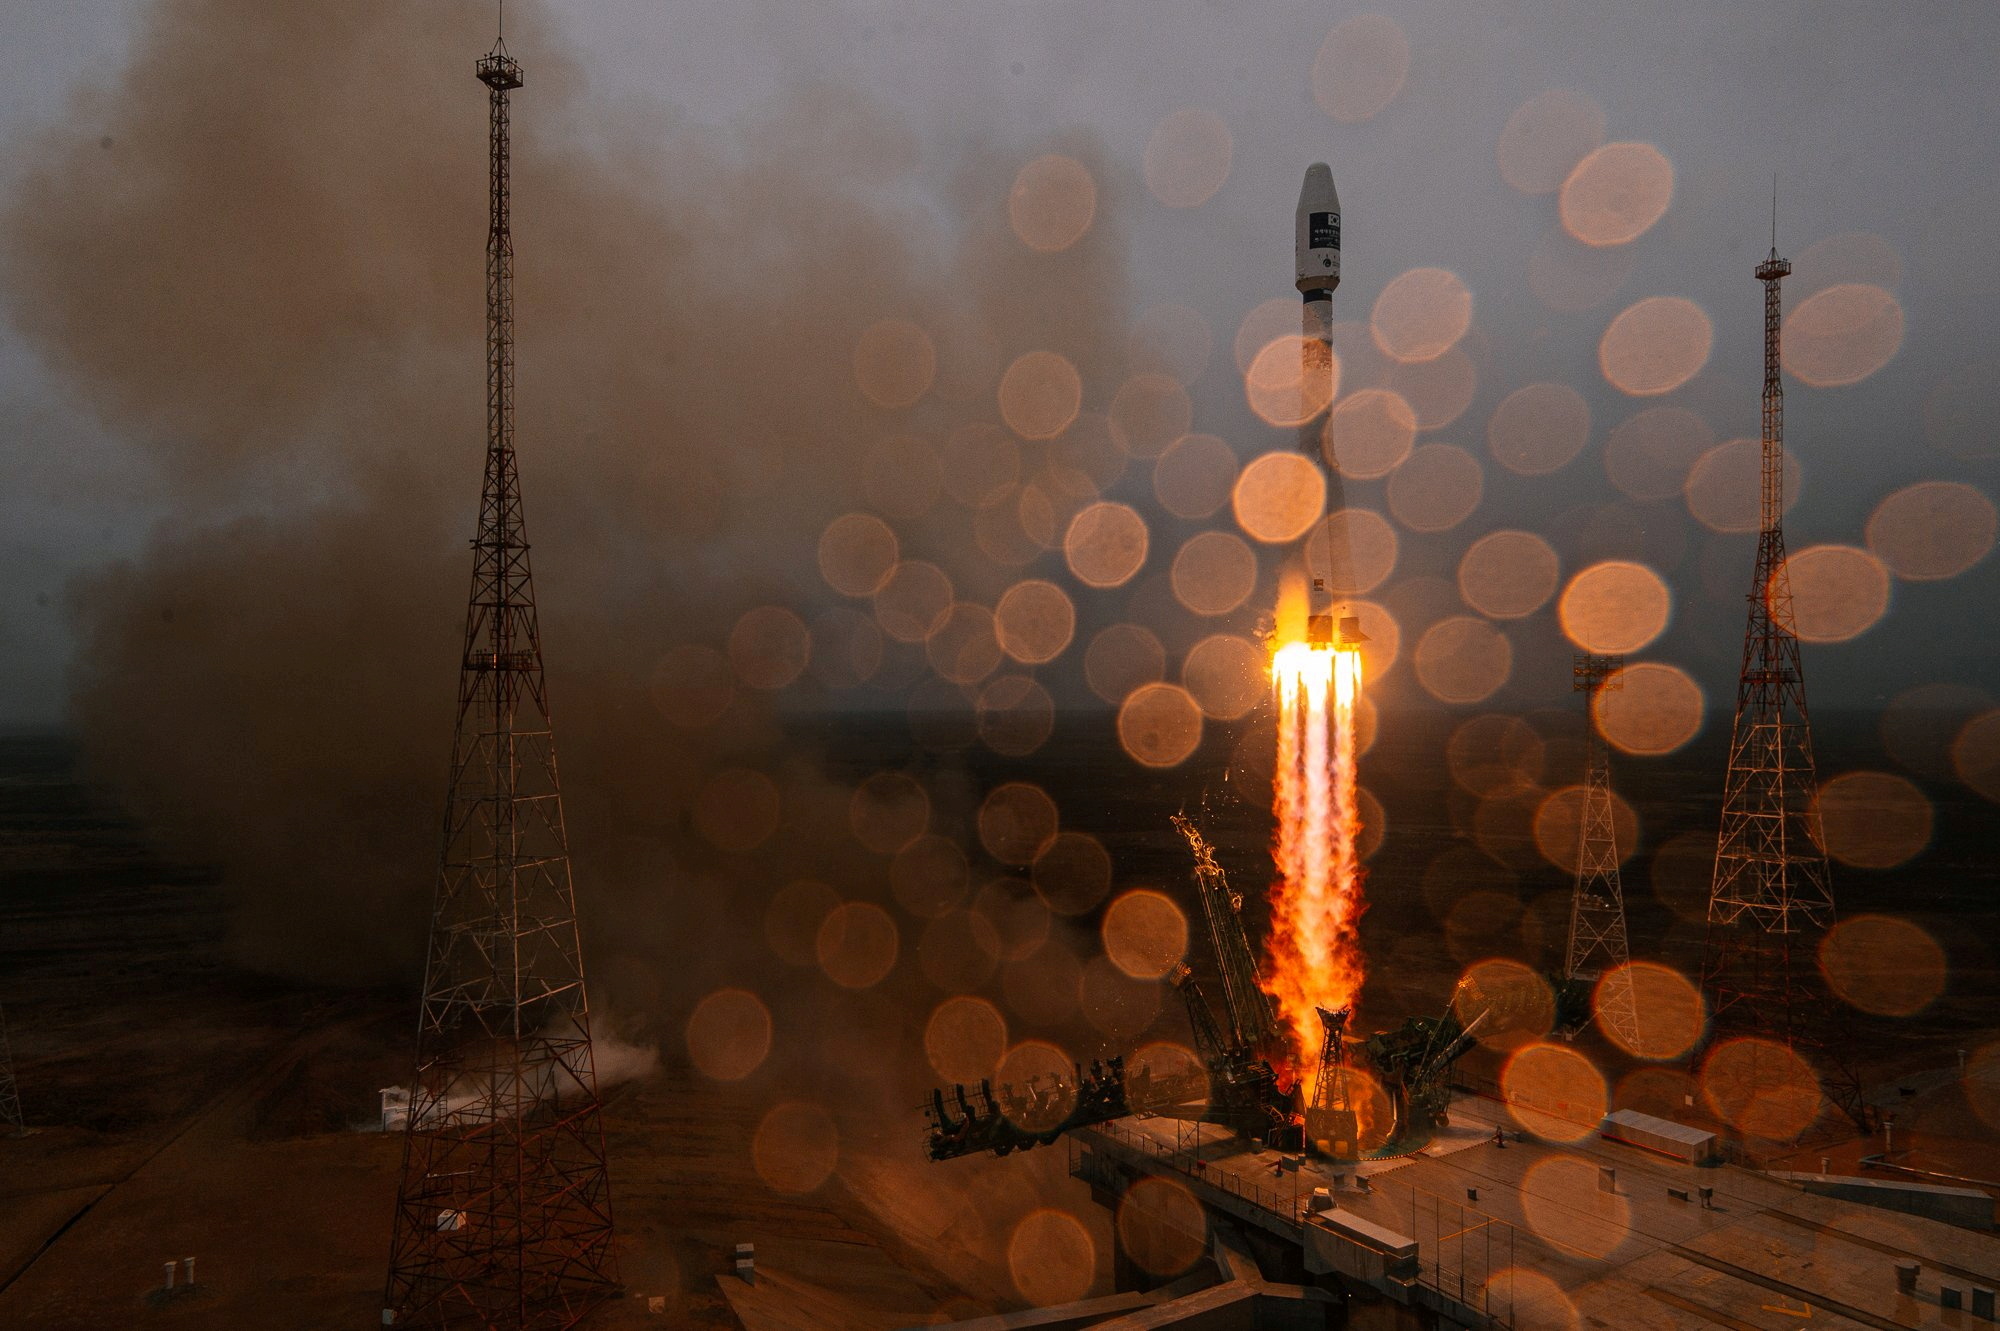 Un cohete ruso Soyuz-2.1a con una etapa superior Fregat y 38 satélites de 18 países despega de una plataforma de lanzamiento durante una lluvia en el cosmódromo de Baikonur, Kazajstán, el 22 de marzo de 2021. Agencia espacial rusa Roscosmos / Folleto vía REUTERS. SUMINISTRADO POR UN TERCERO. CRÉDITO OBLIGATORIO. IMÁGENES TPX DEL DÍA
